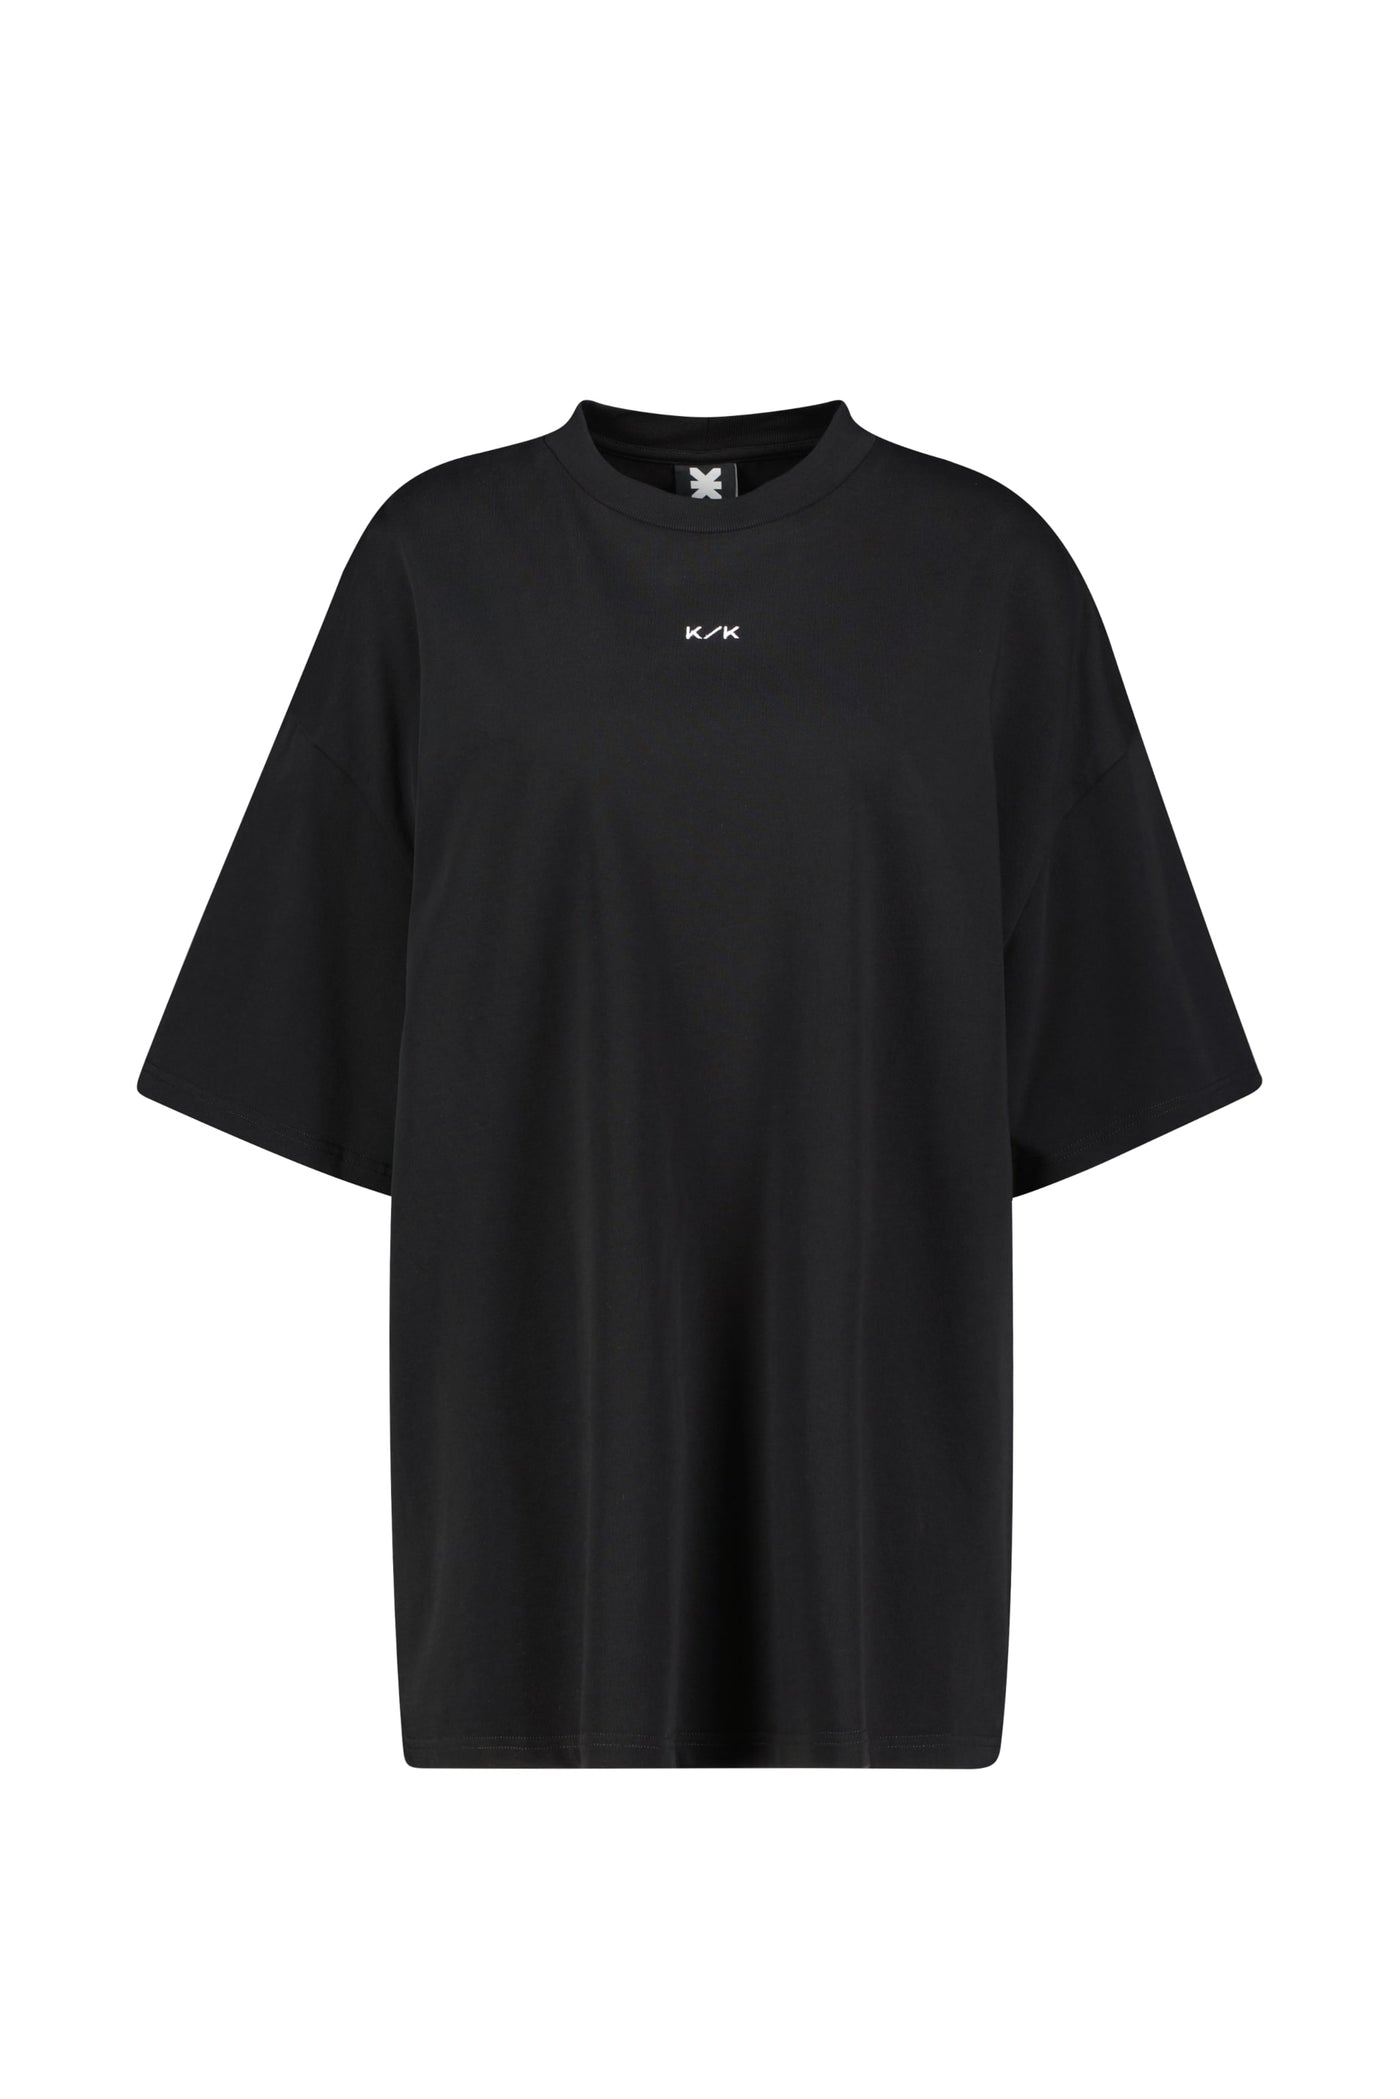 T-Shirt Black – Karo Kauer